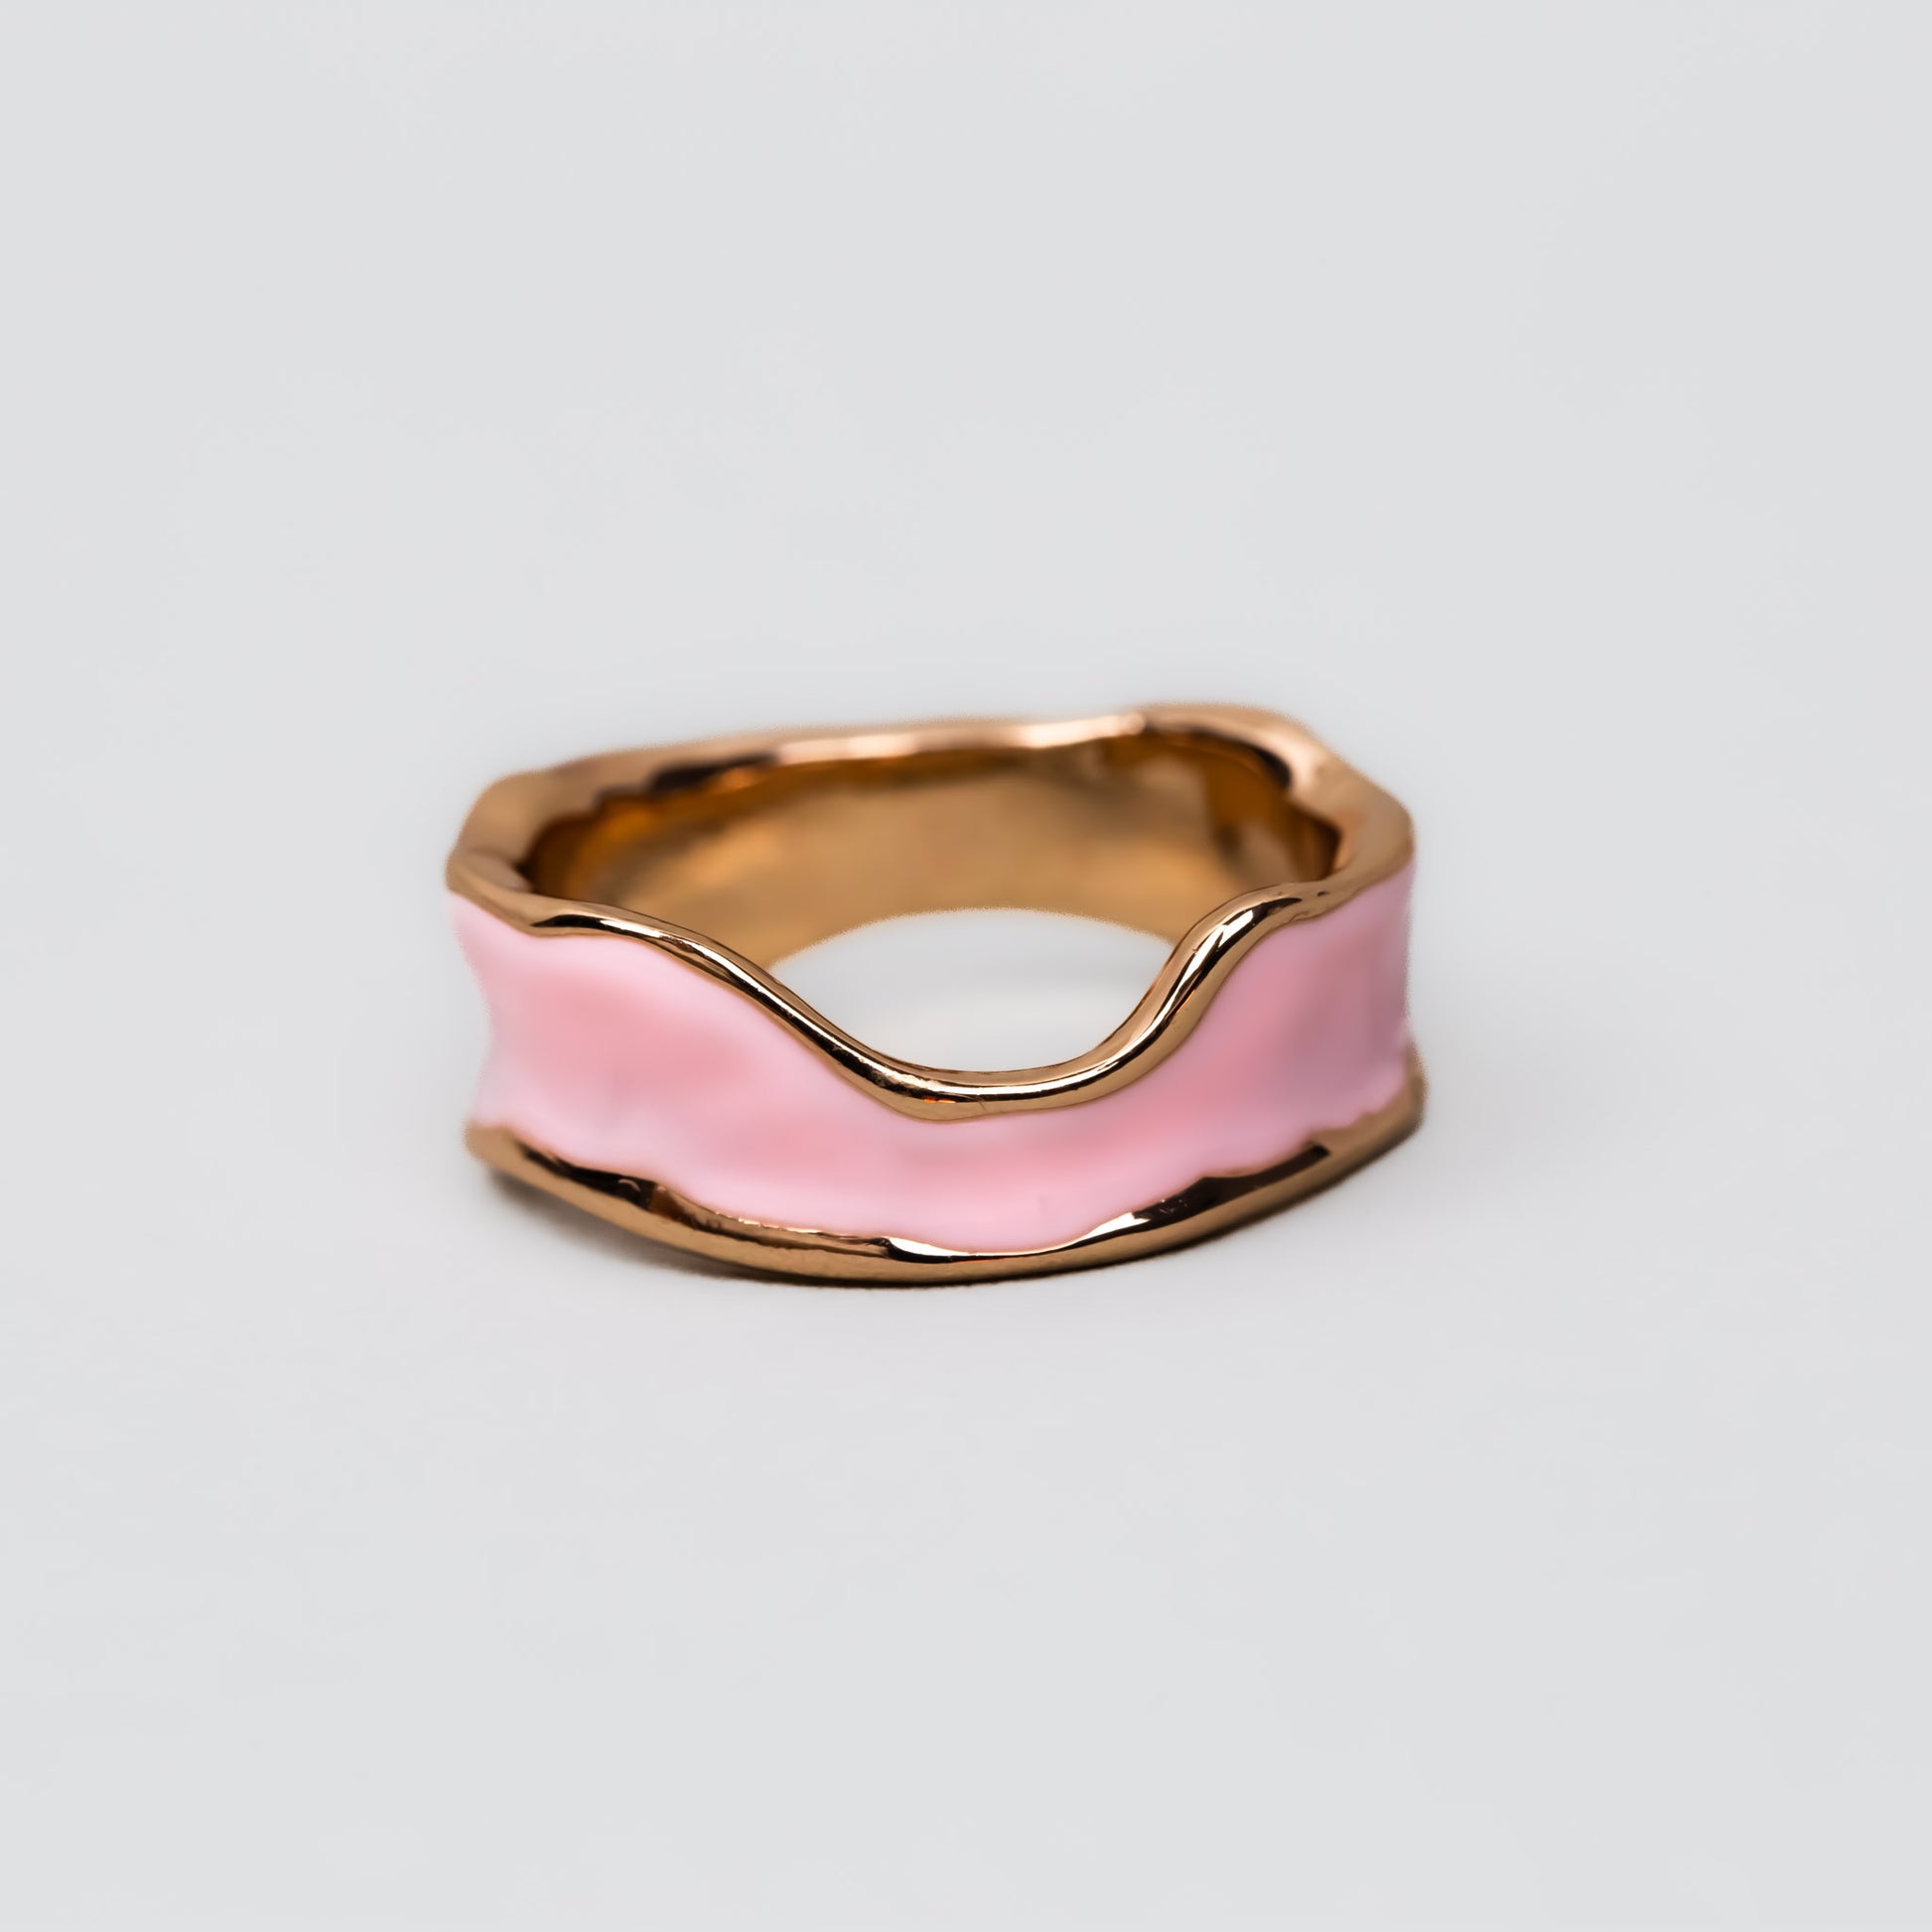 Inel auriu cu formă abstractă și accent color - Roz